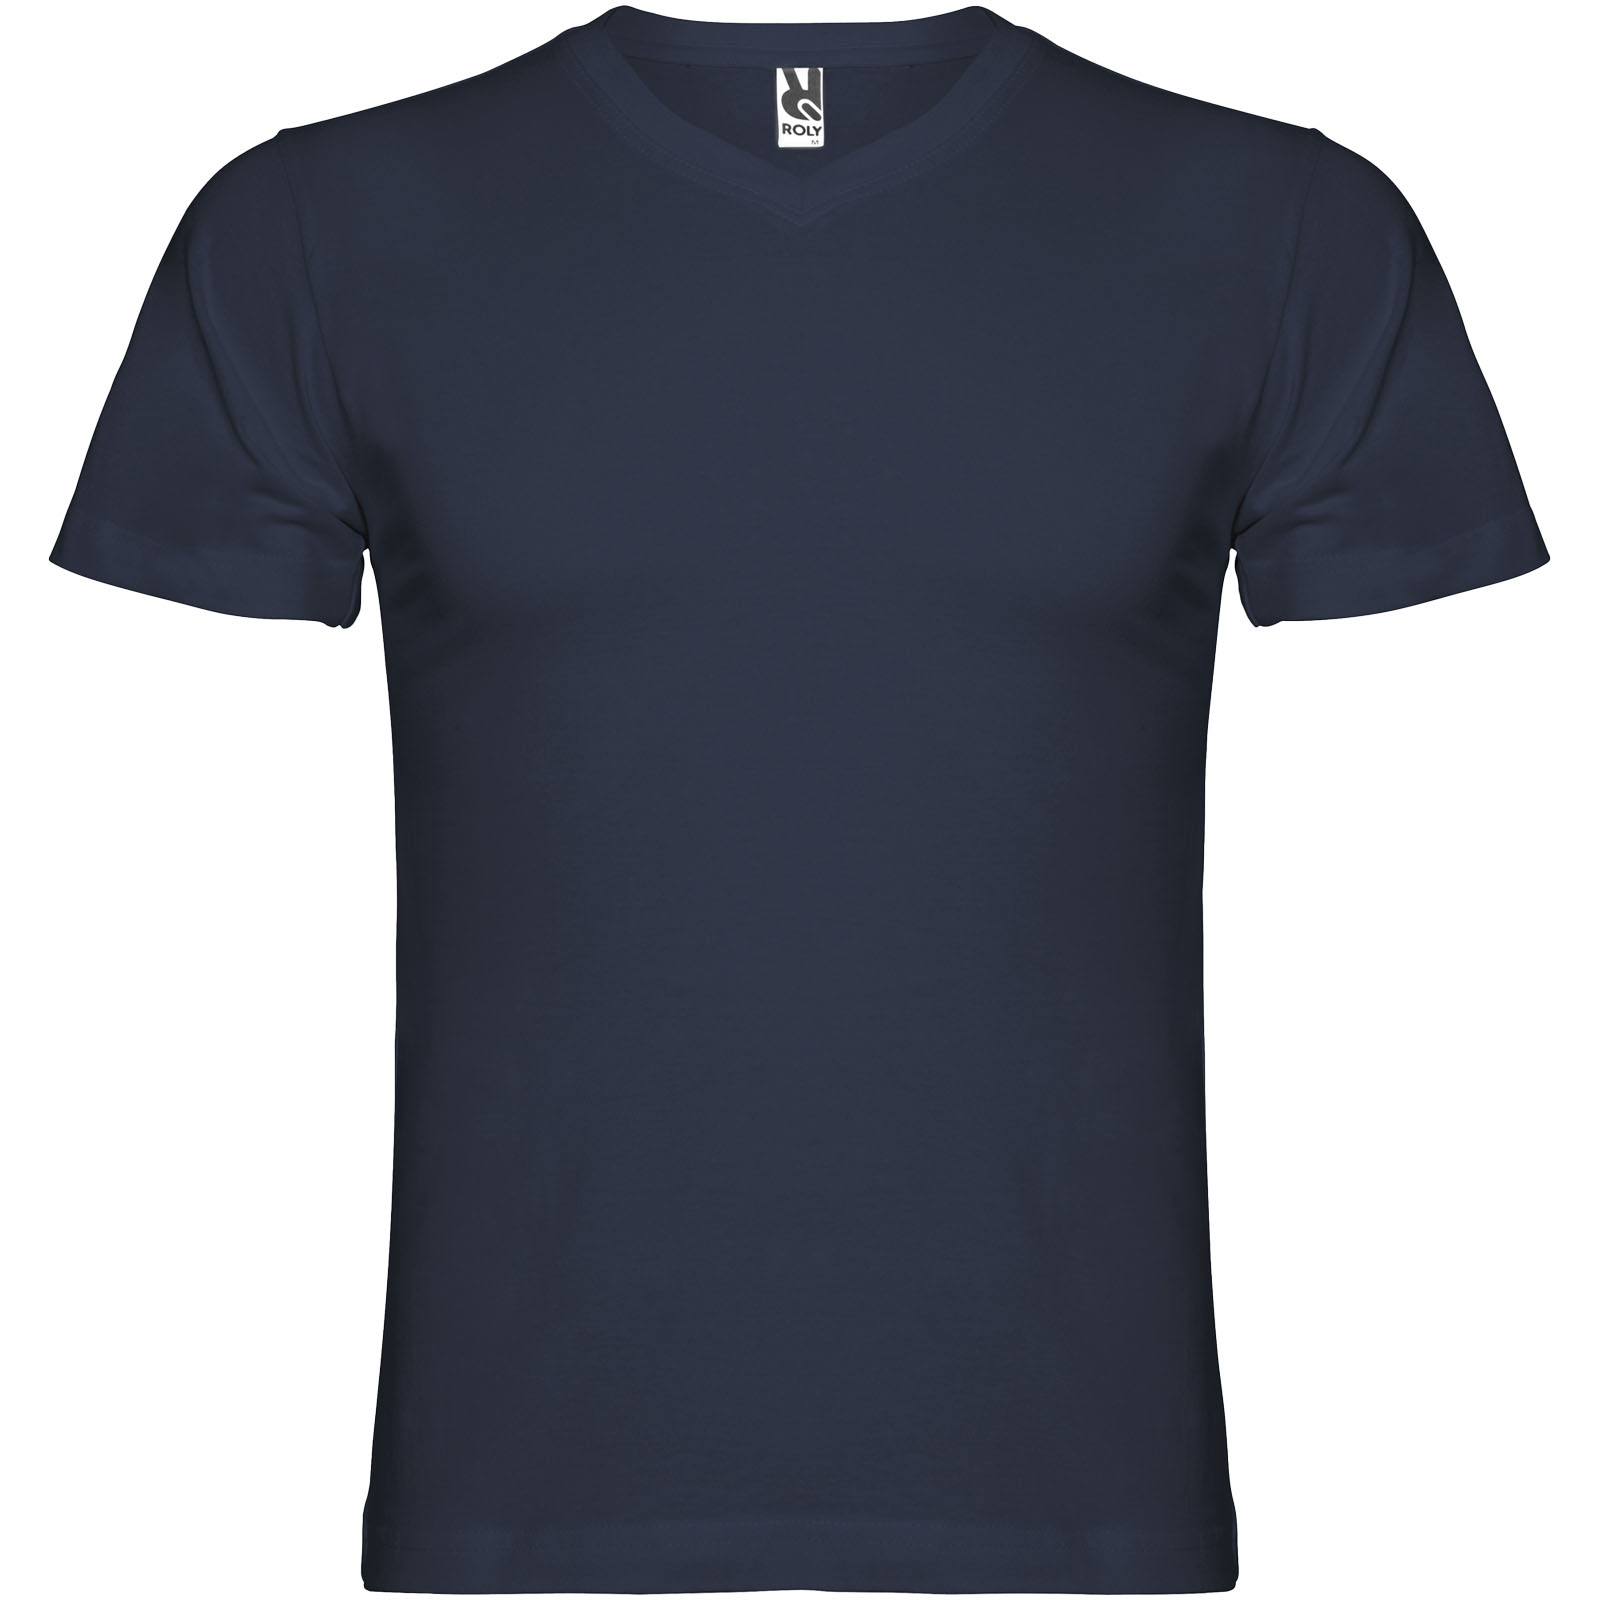 Advertising T-shirts - Samoyedo short sleeve men's v-neck t-shirt